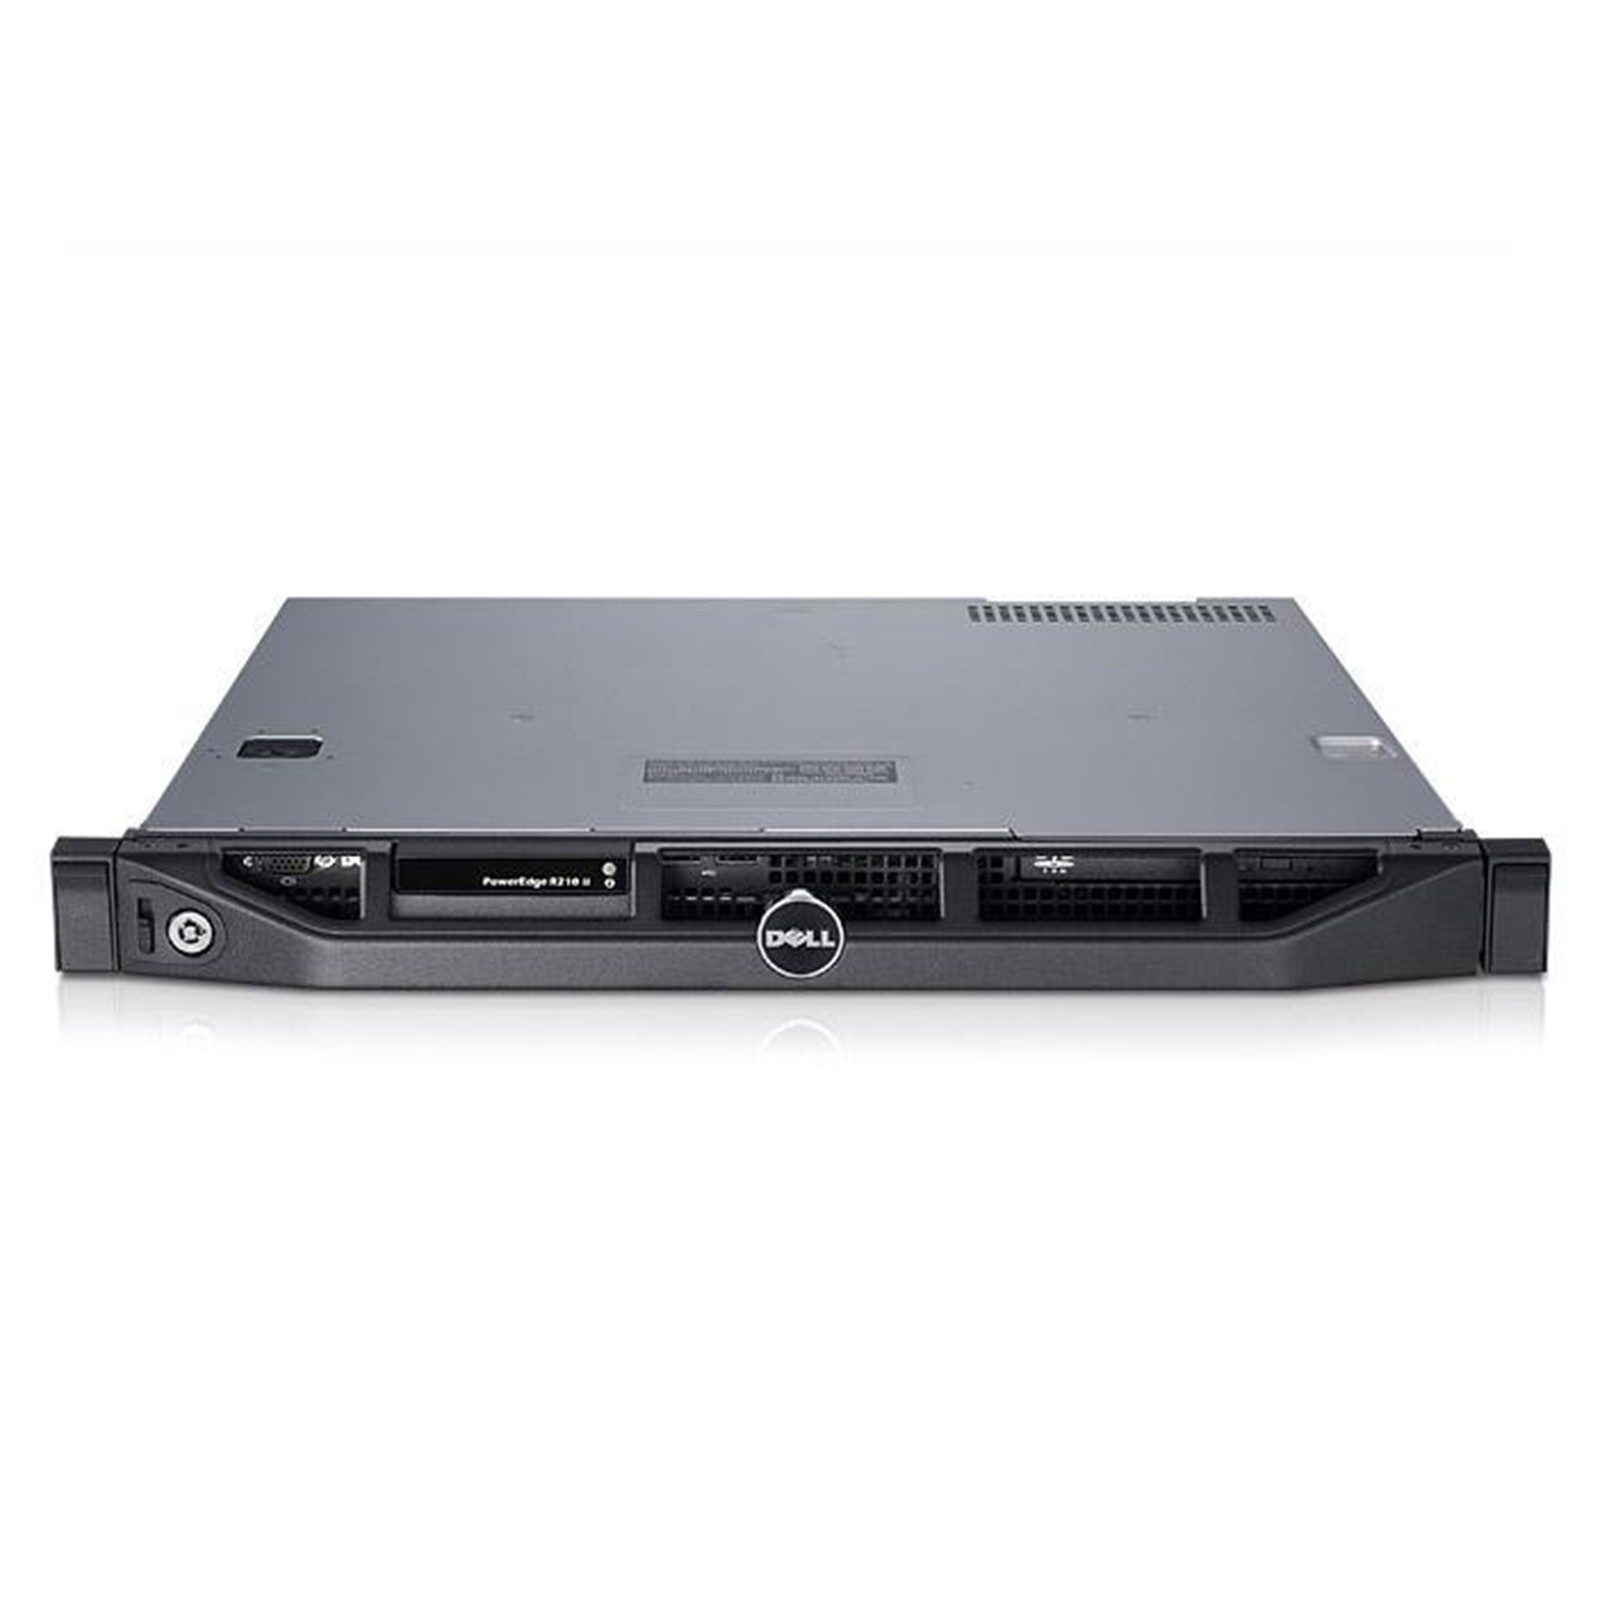 Dell PowerEdge R210 II 1U 2x LFF (3.5") Front